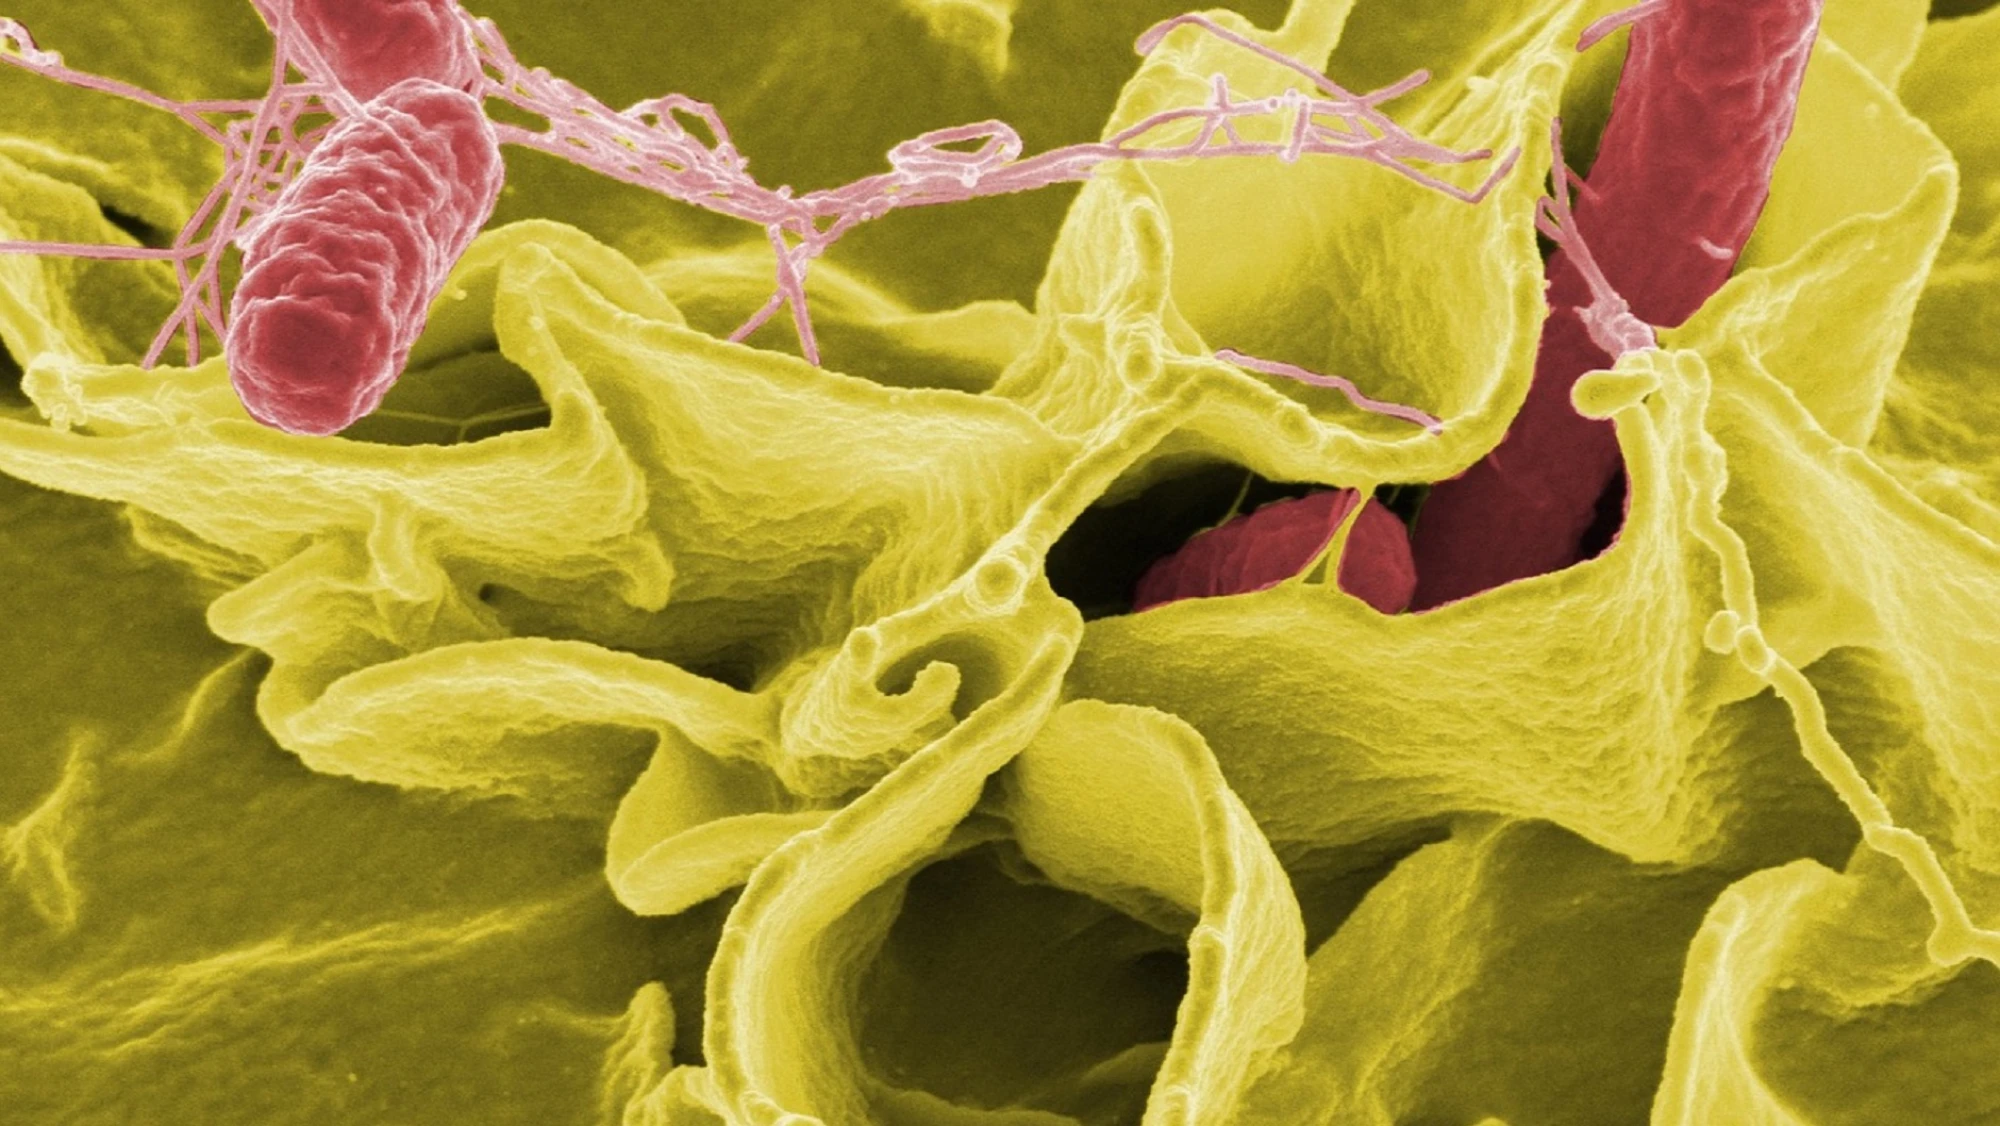 Bacteria intestinal con ácido sulfúrico nos protege contra la salmonella